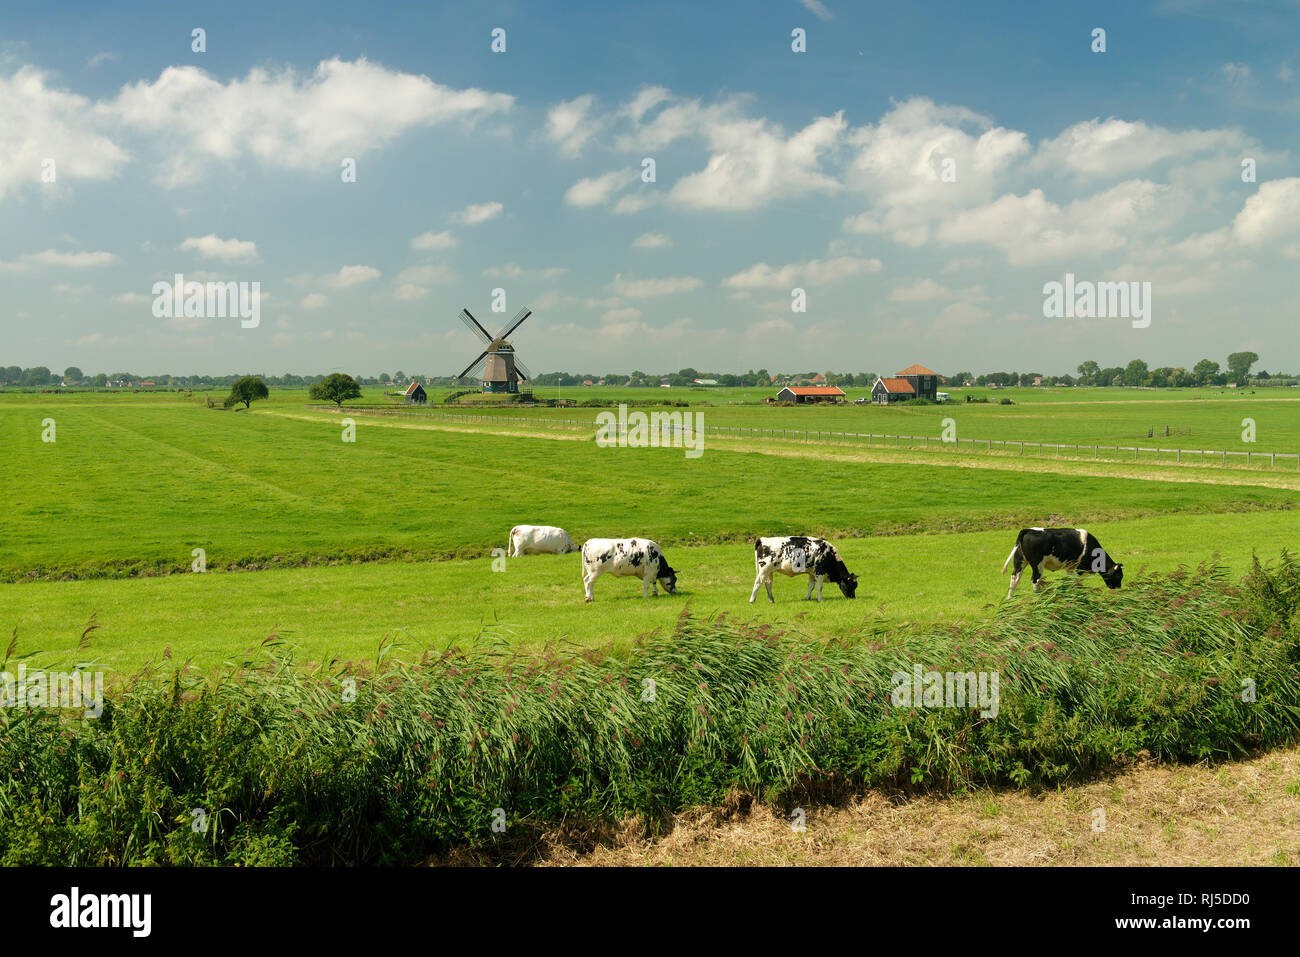 Typisches Landschaftsbild mit Windmühle und Fleckvieh am Deich des Ijsselmeeres, Edam, Noord-Holland, Ijsselmeer, Niederlande Foto Stock